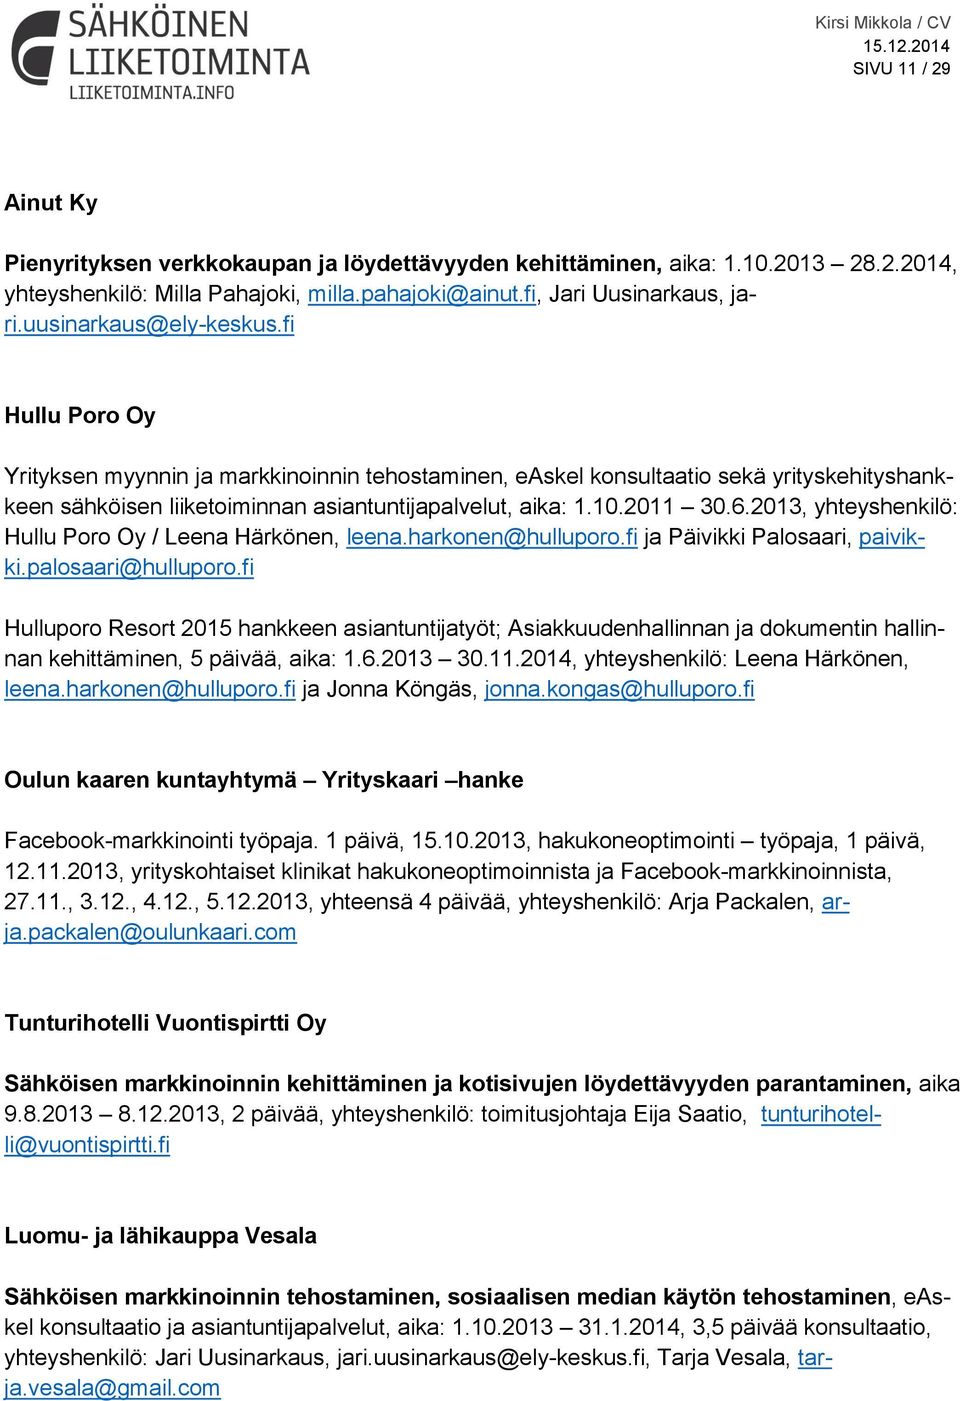 2011 30.6.2013, yhteyshenkilö: Hullu Poro Oy / Leena Härkönen, leena.harkonen@hulluporo.fi ja Päivikki Palosaari, paivikki.palosaari@hulluporo.